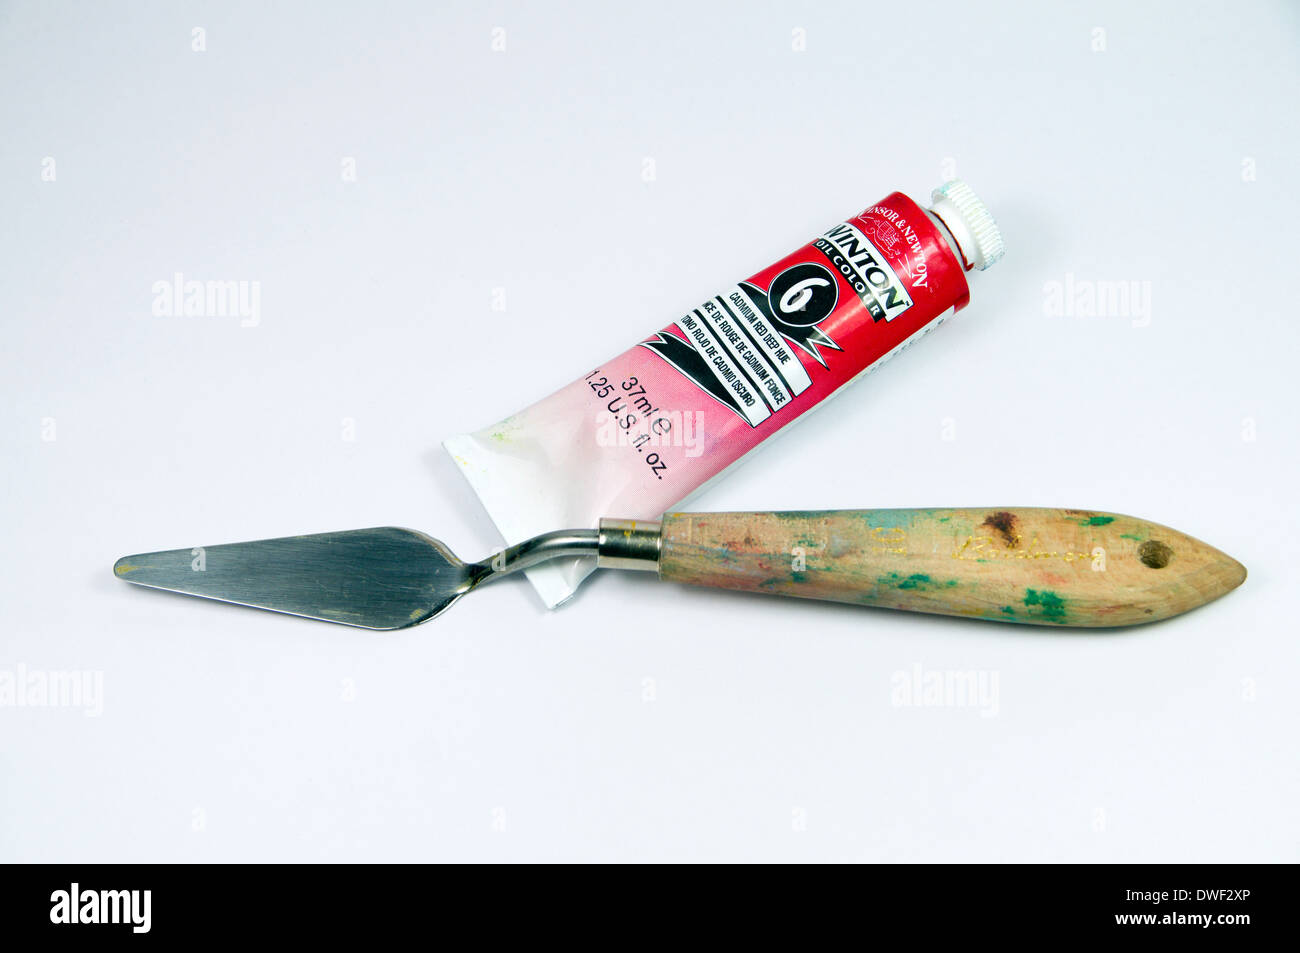 Les artistes de la peinture à l'huile tube et un couteau. Banque D'Images